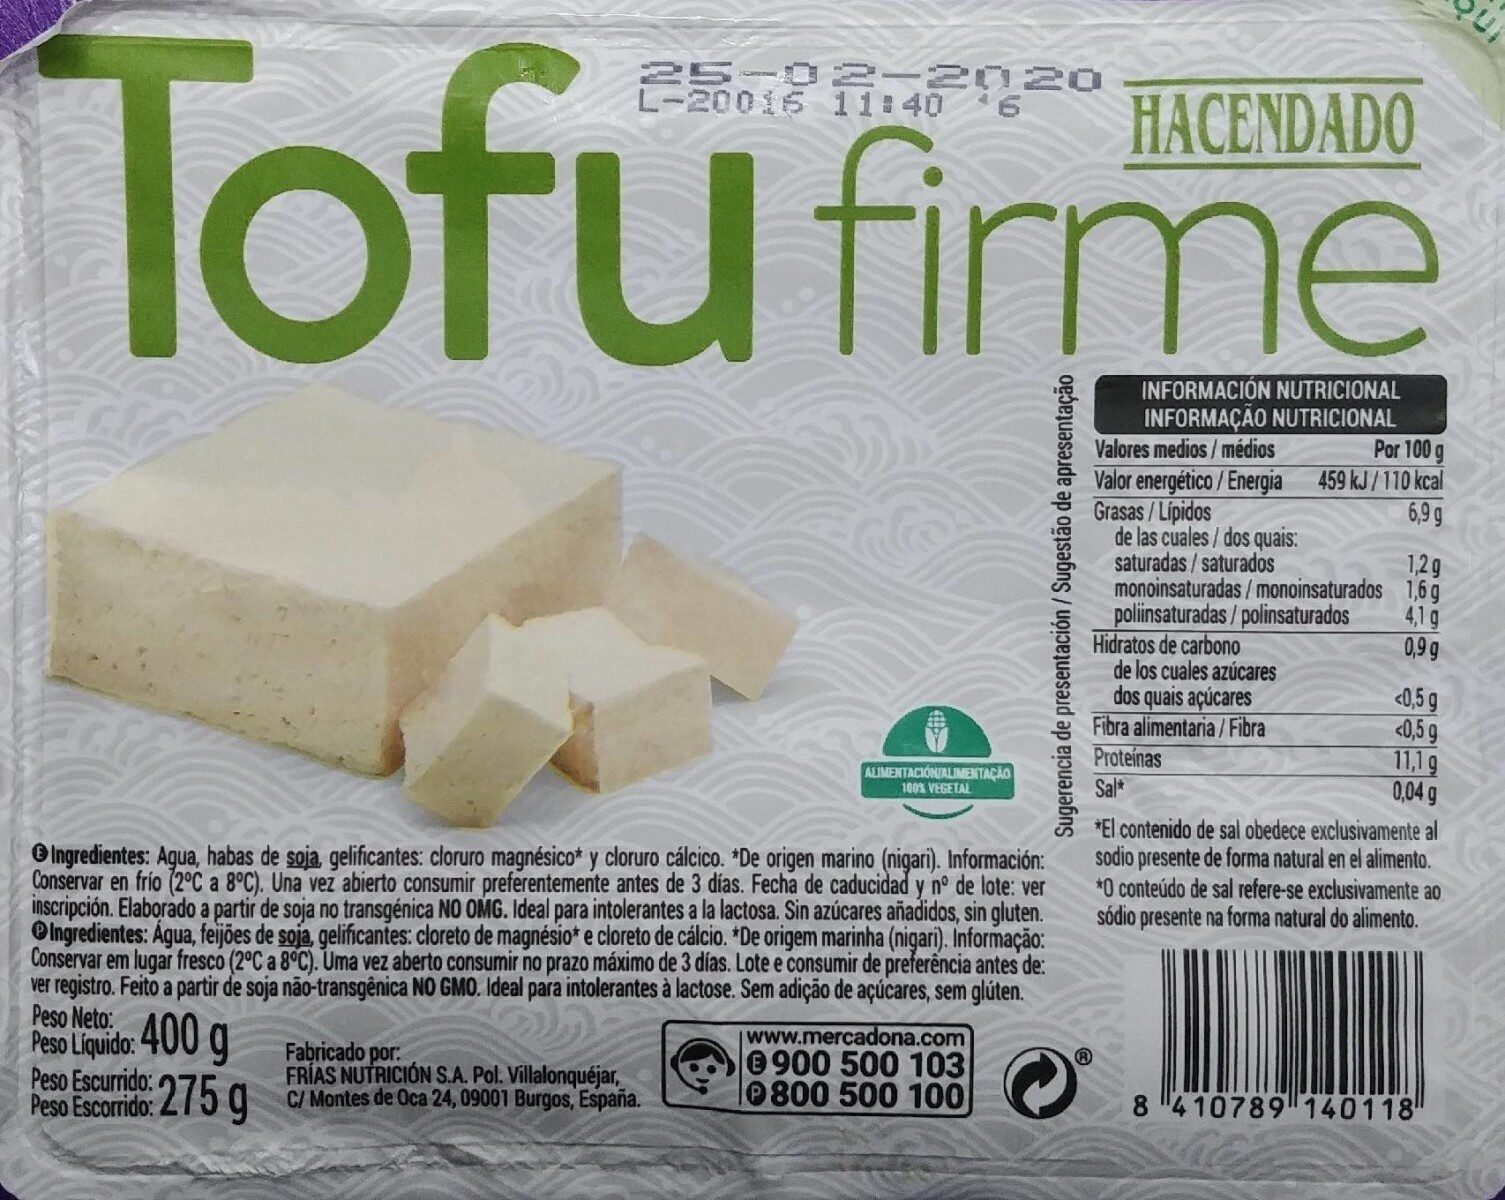 Tofu firme - Producte - en